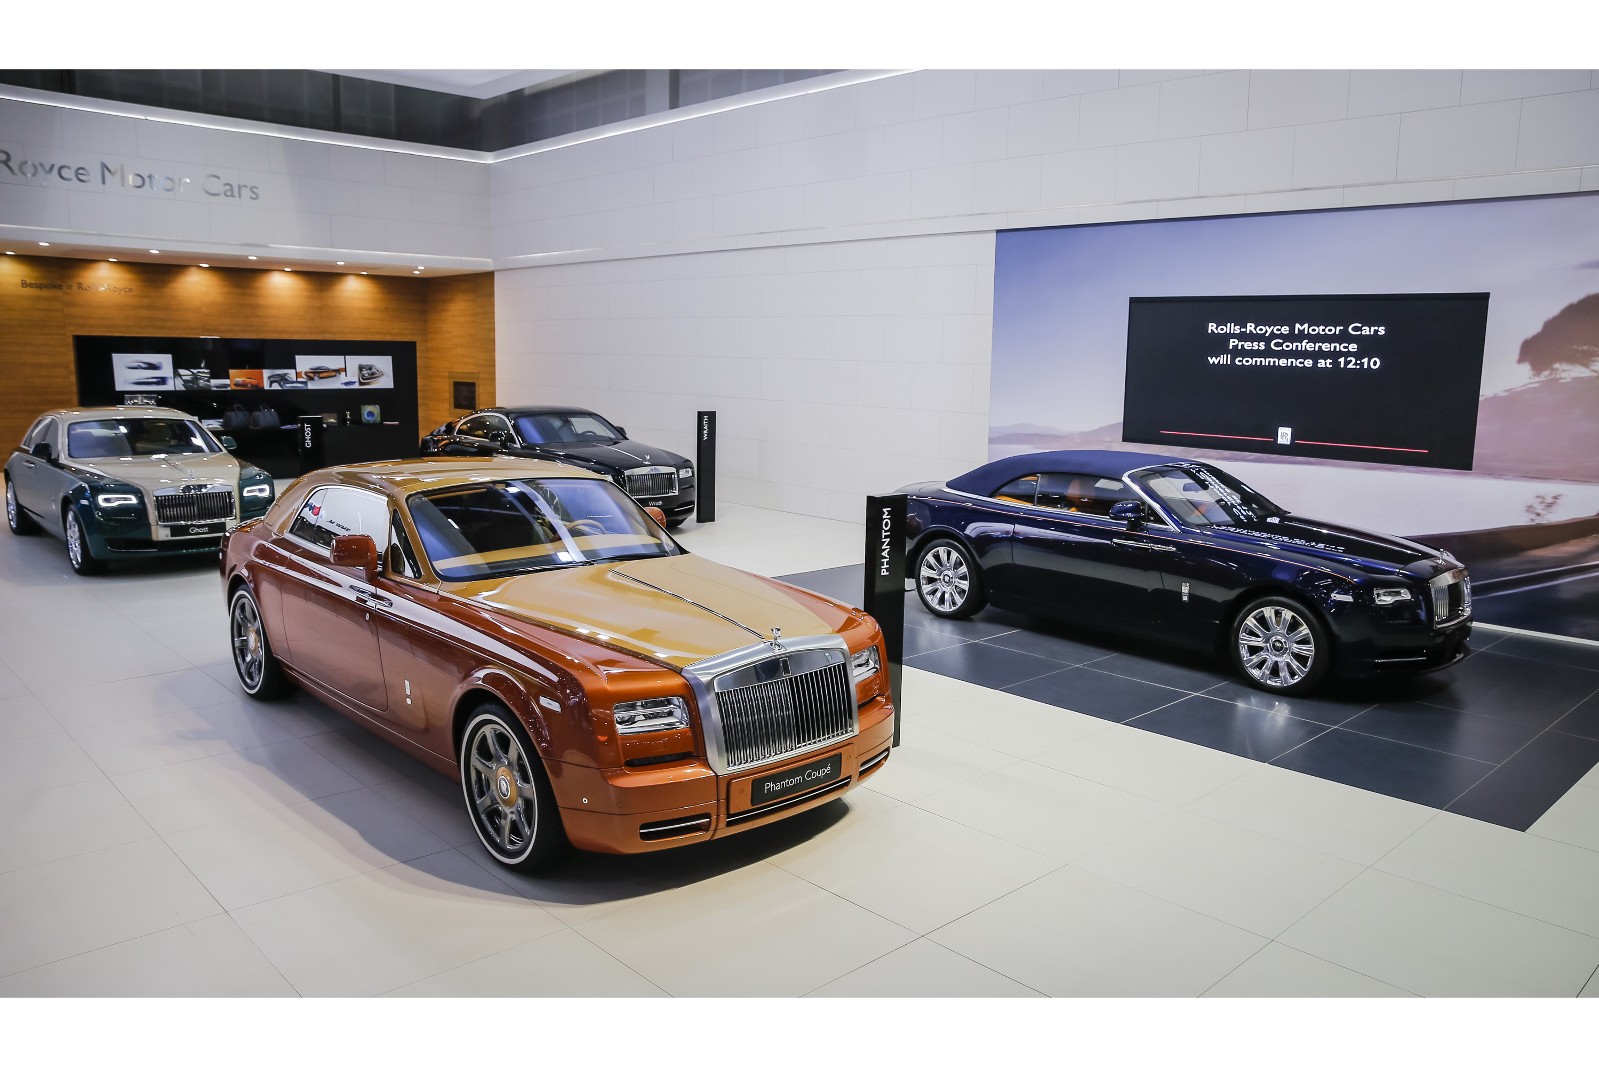 “بالصور” رولزرويس فانتوم كوبيه 2016 تايجر وجوست جولف ايديشن 2016 تظهران بألوان جذابة Rolls-Royce